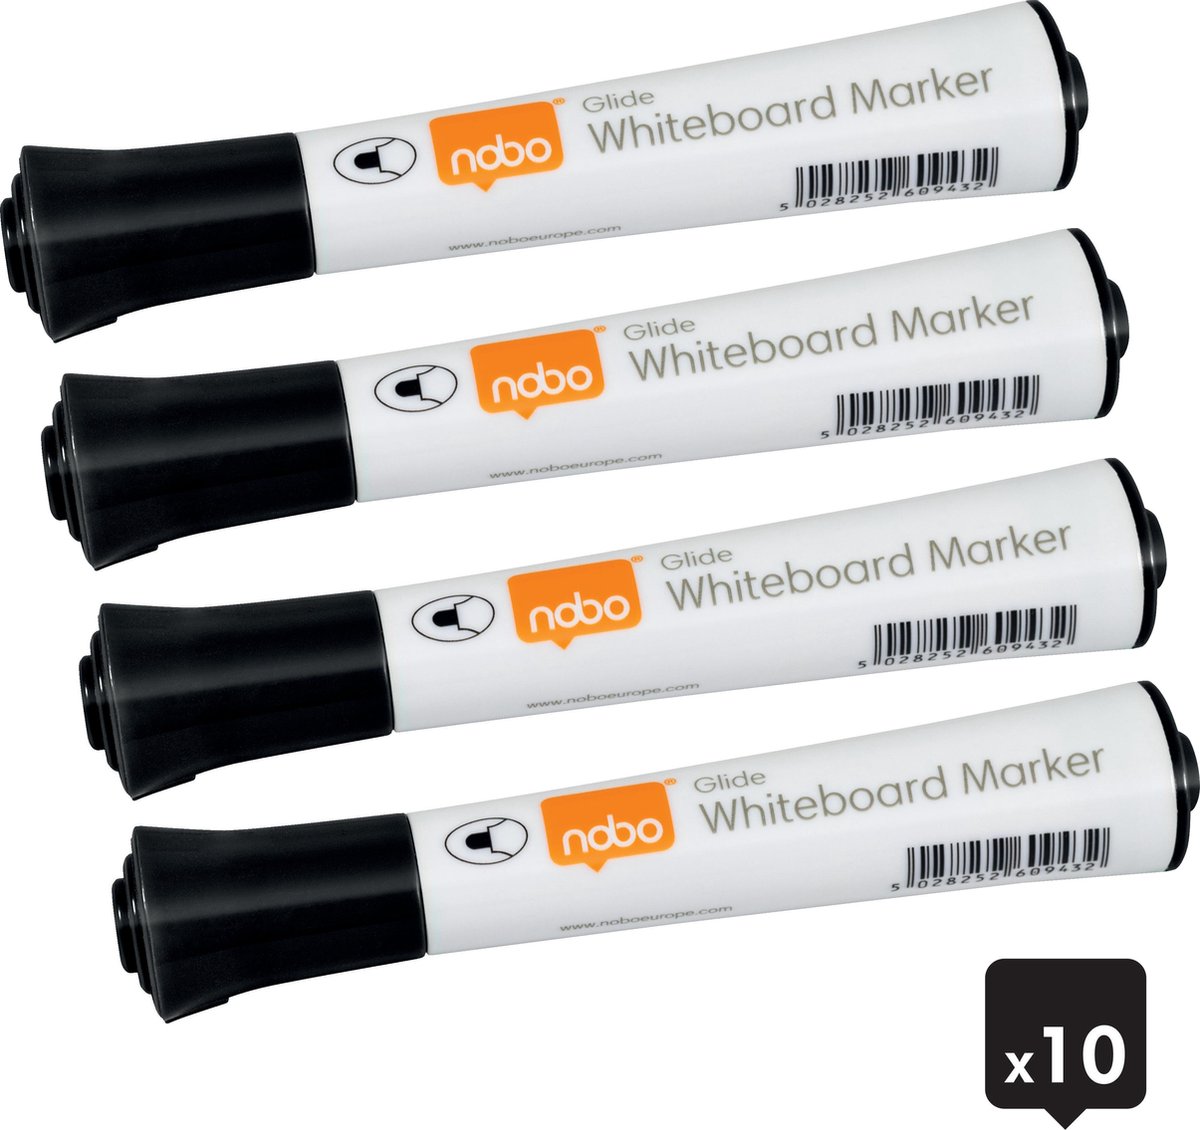 Nobo Glide Whiteboard Markers Met Ronde Punt - Pak Van 10 Stuks - Zwart